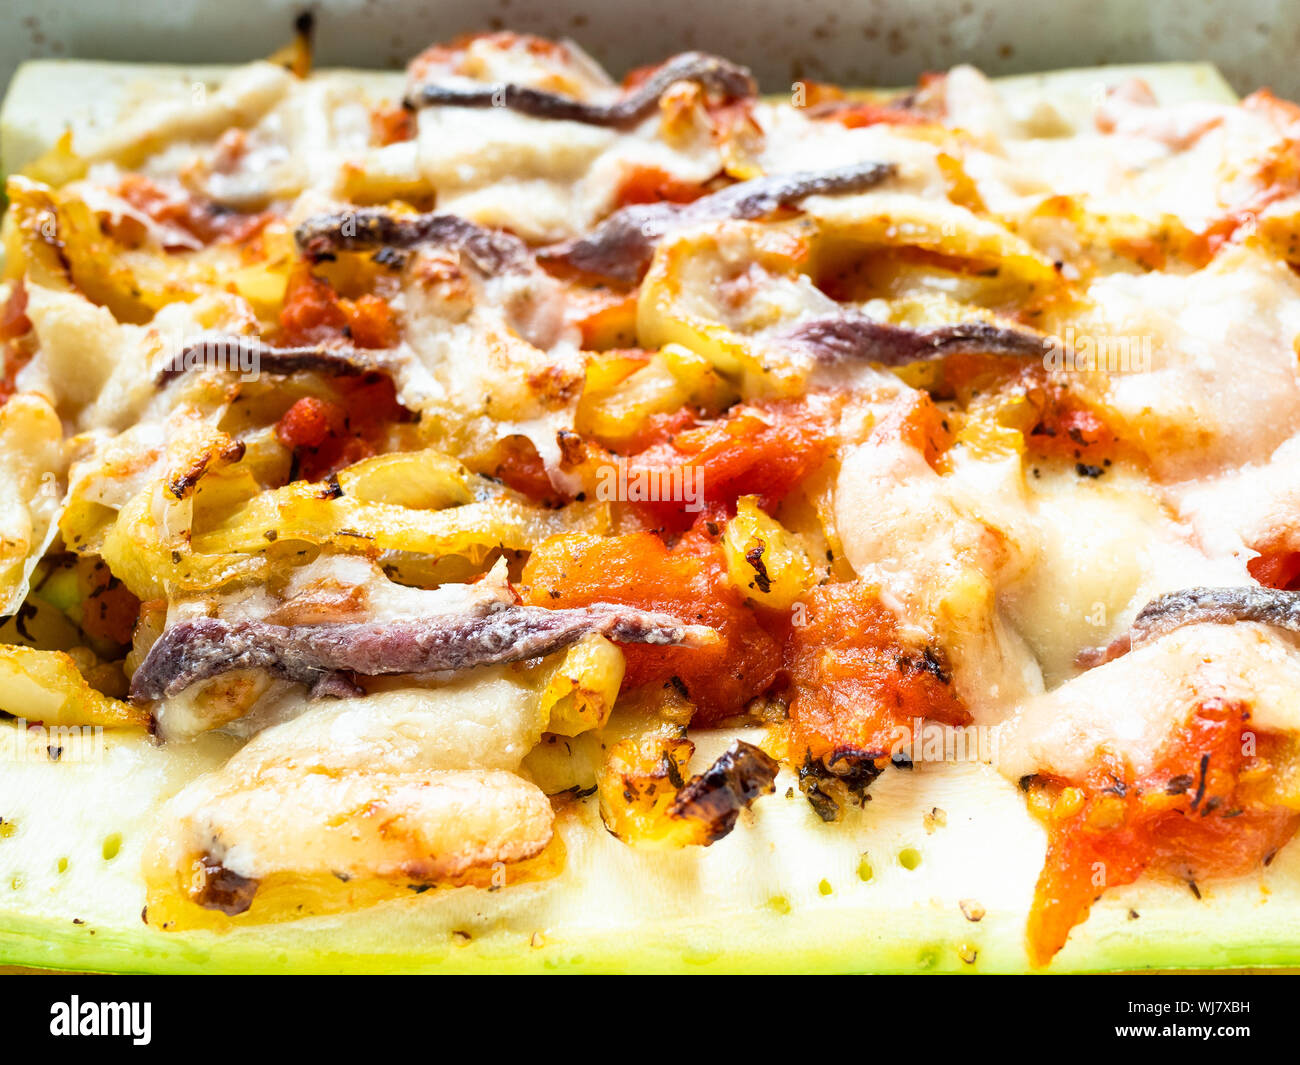 Cuisine française - cuit au four avec des tranches de courgettes et poivrons tomates avec topping from cheece Parmesan, l'ail et les anchois avec la vinaigrette d'huile d'olive Banque D'Images